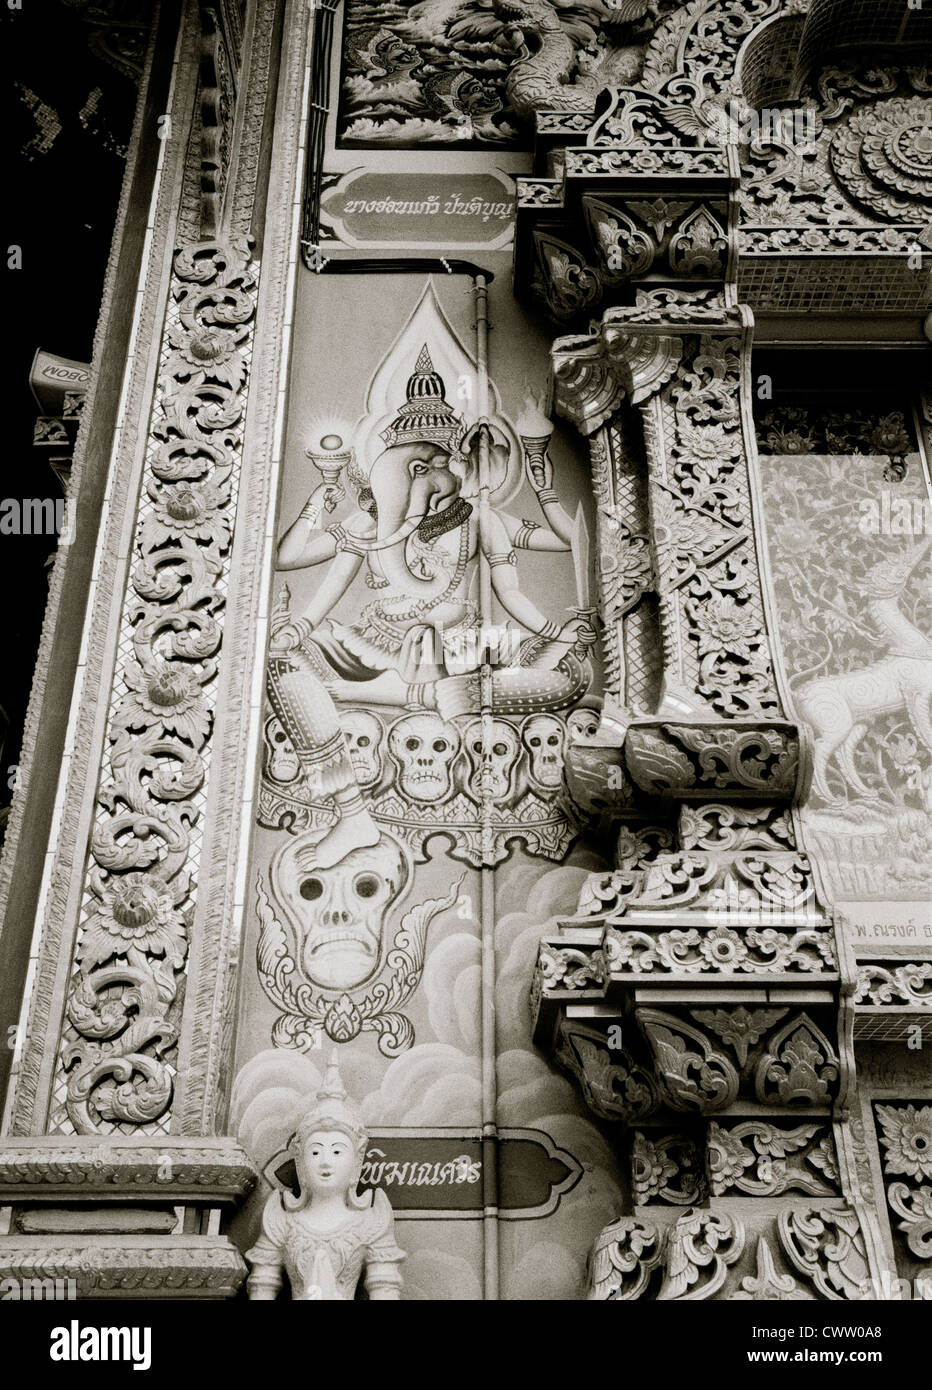 Dekorative Raffung im Tempel Wat Luang in Chiang Khong in Thailand in Südostasien Fernost. Buddhismus buddhistische Kunst Architektur Reise verzierte Kunst Stockfoto